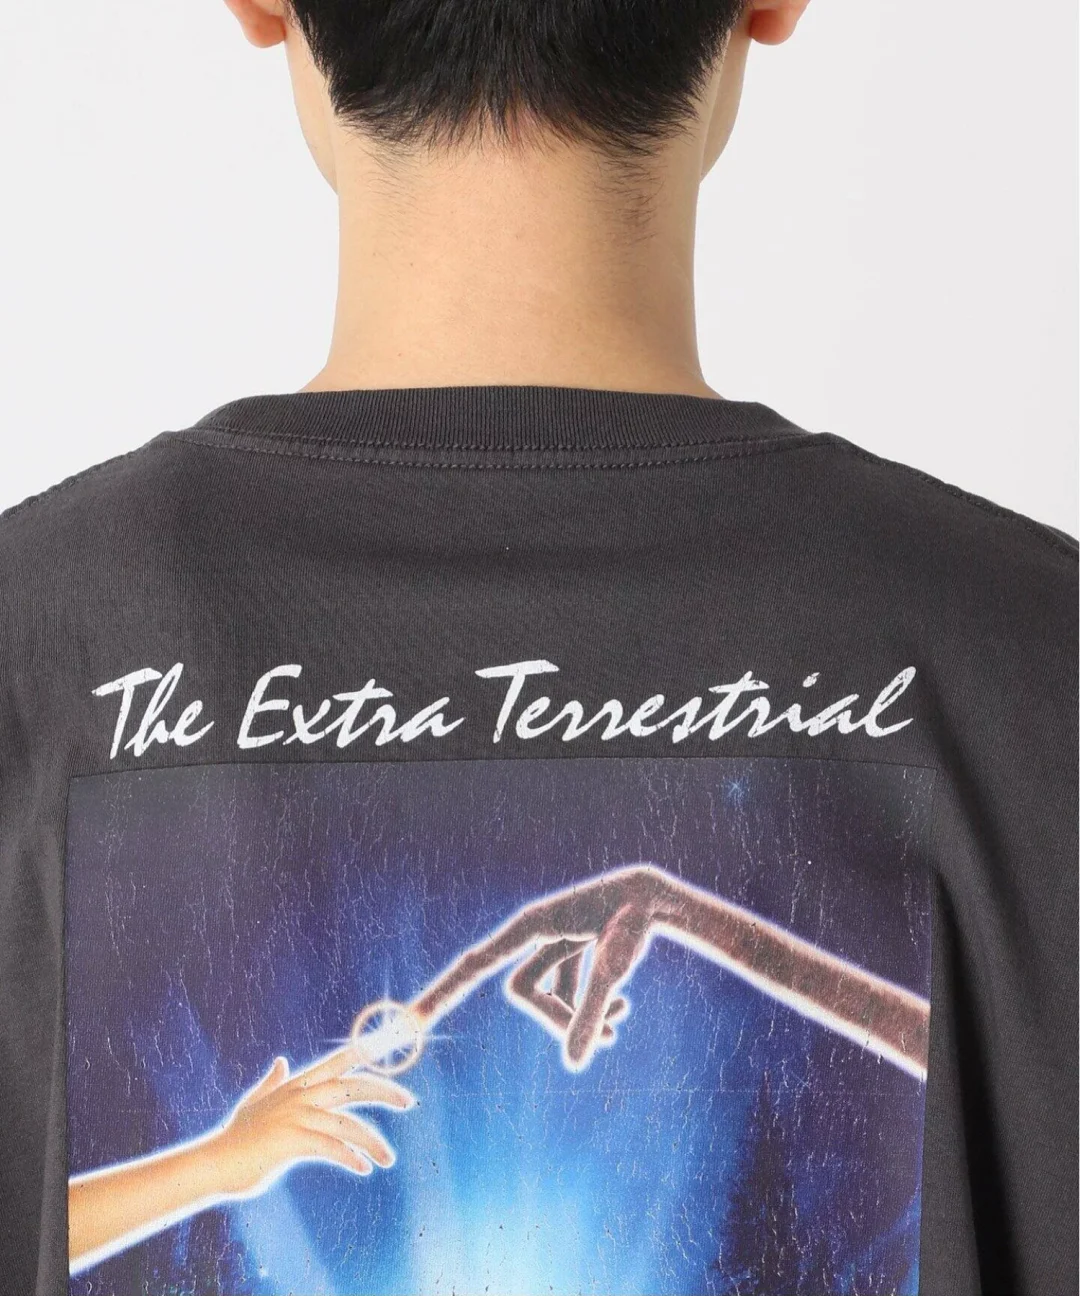 【2024年 6月中旬 発売】映画「E.T.」× JOURNAL STANDARD 別注 S/S Tシャツ (ジャーナルスタンダード イーティー)